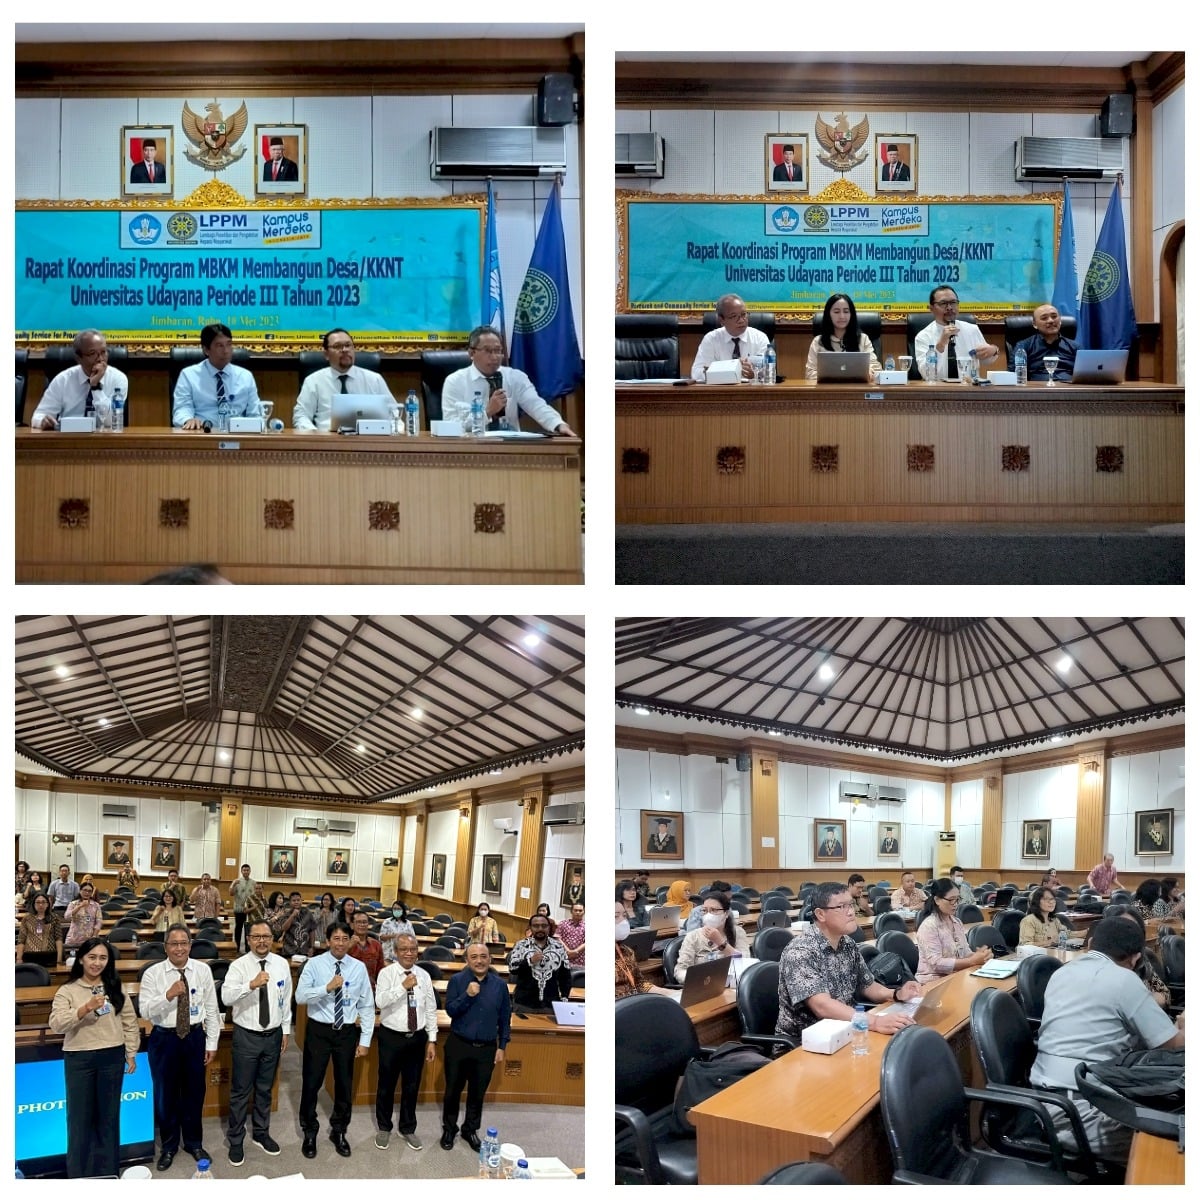 LPPM Universitas Udayana Gelar Rapat Koordinasi Program MBKM Membangun Desa/KKNT Periode III Tahun 2023